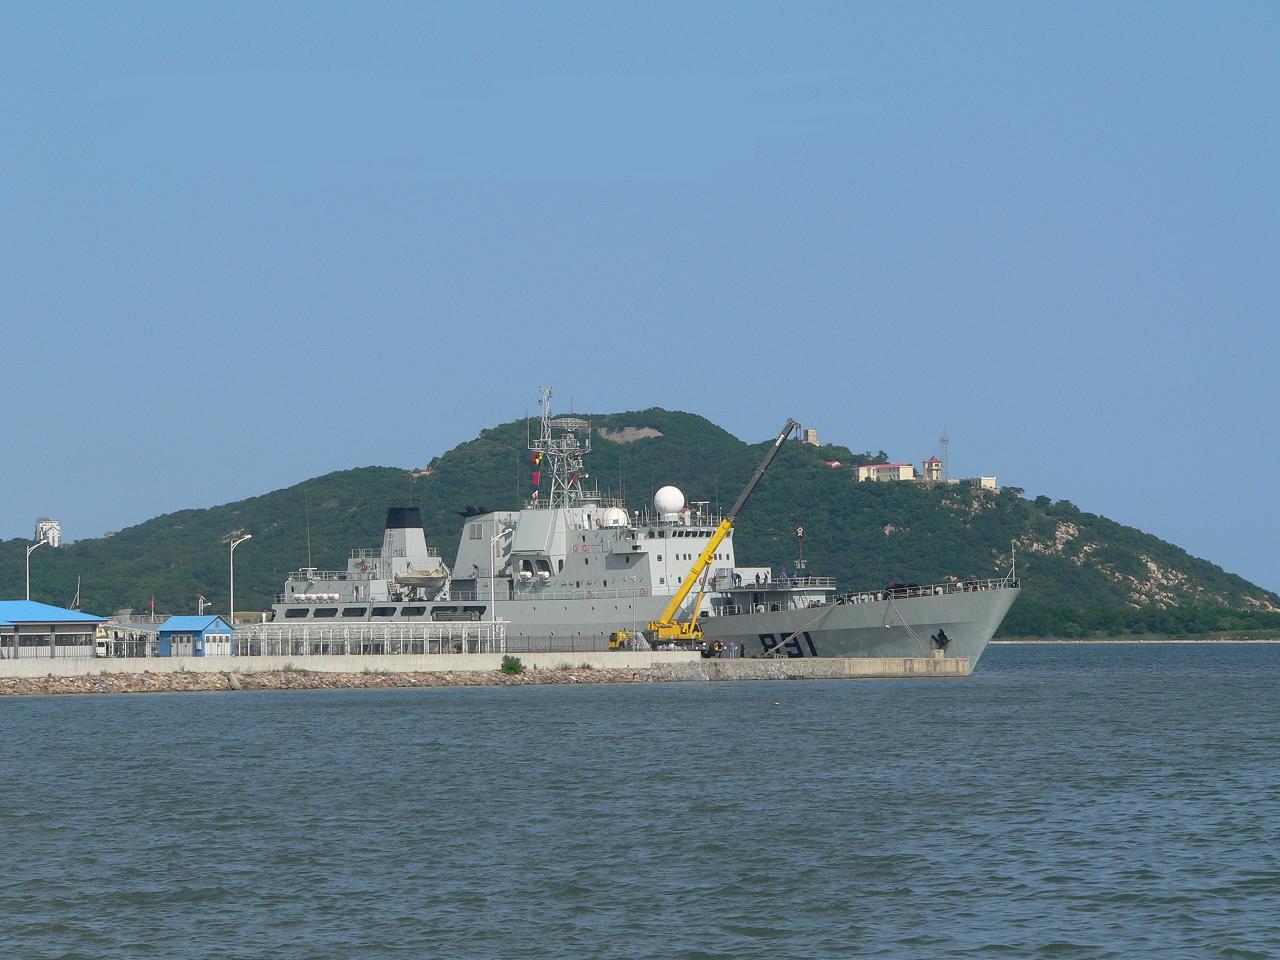 Новый китайский эсминец УРО Проекта 052D.